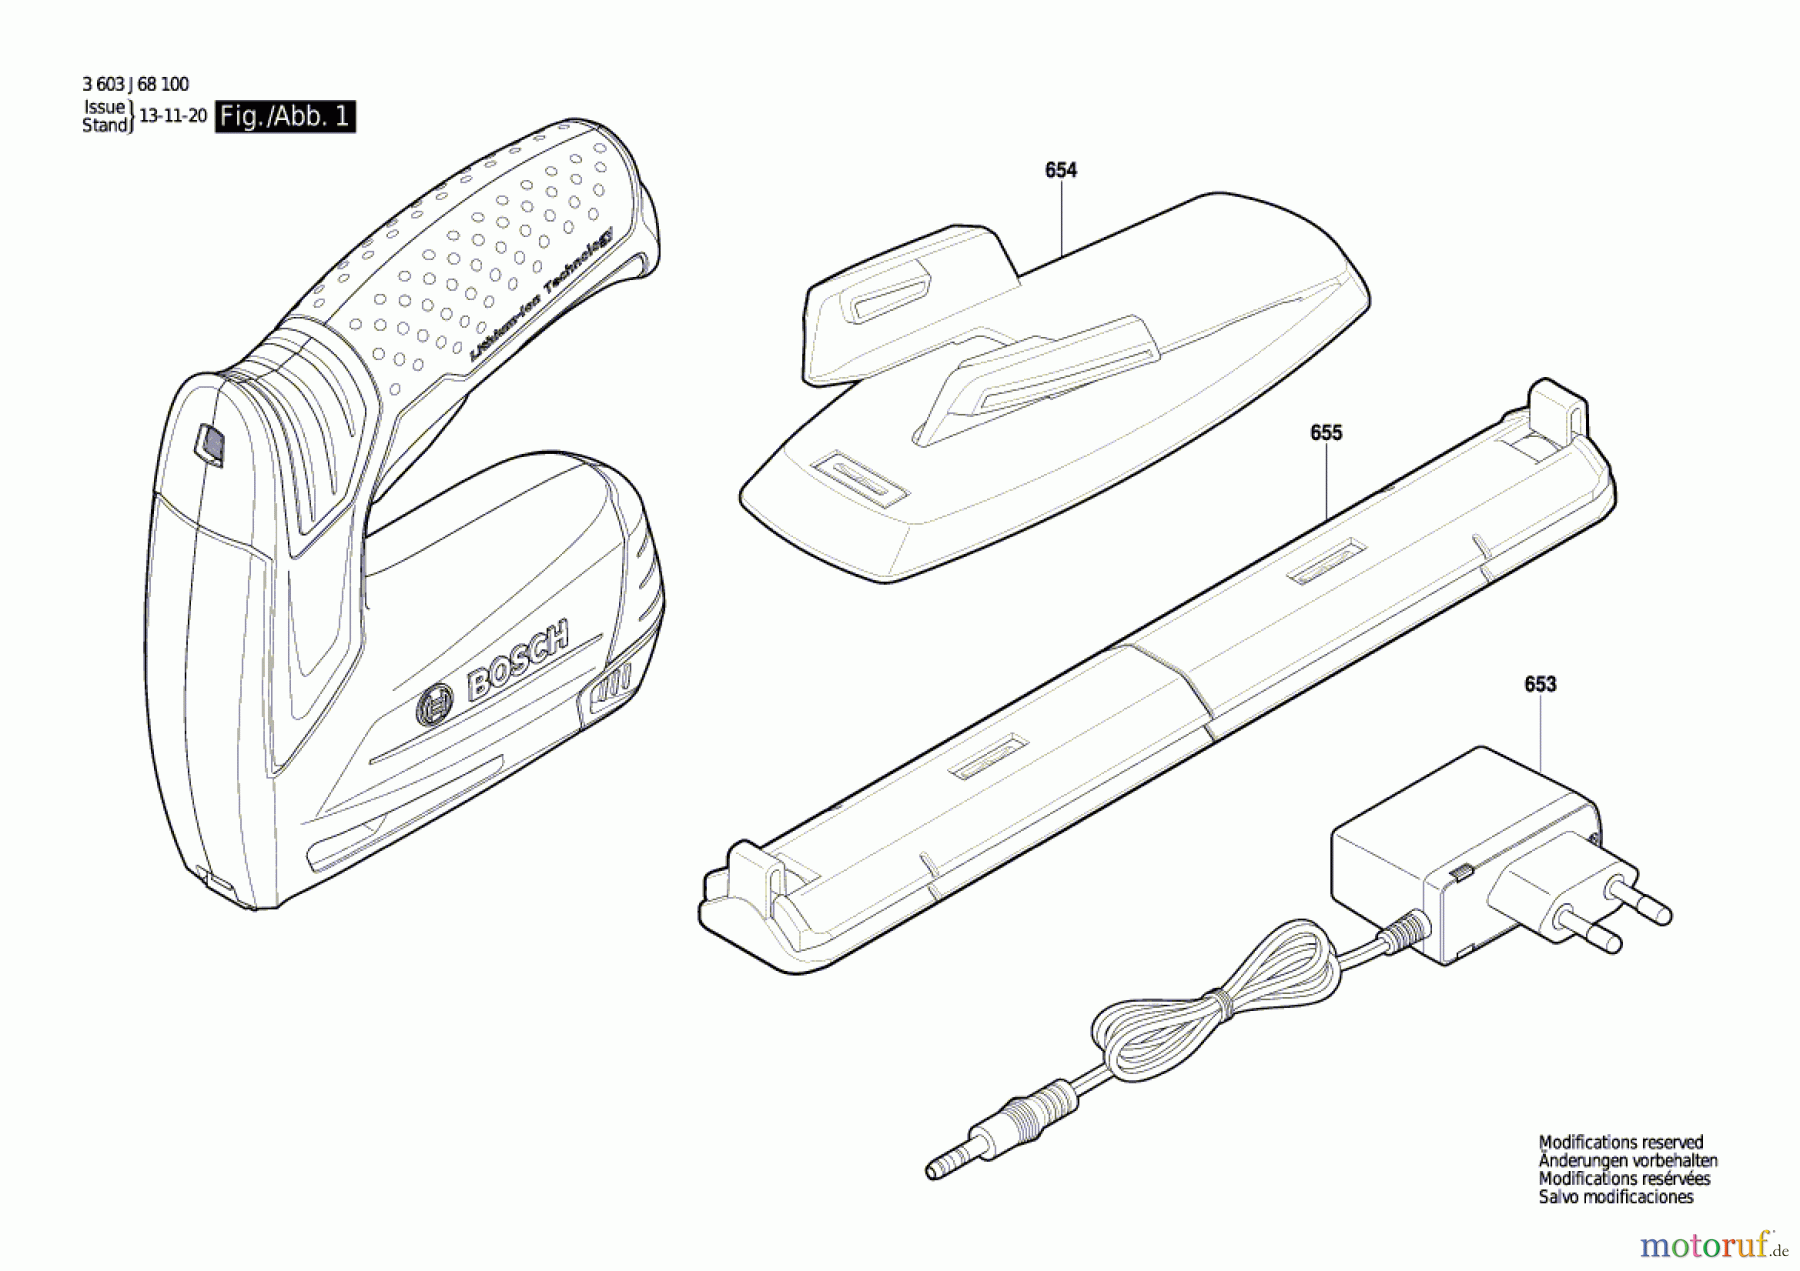  Bosch Werkzeug Tacker PTK 3,6 LI Seite 1